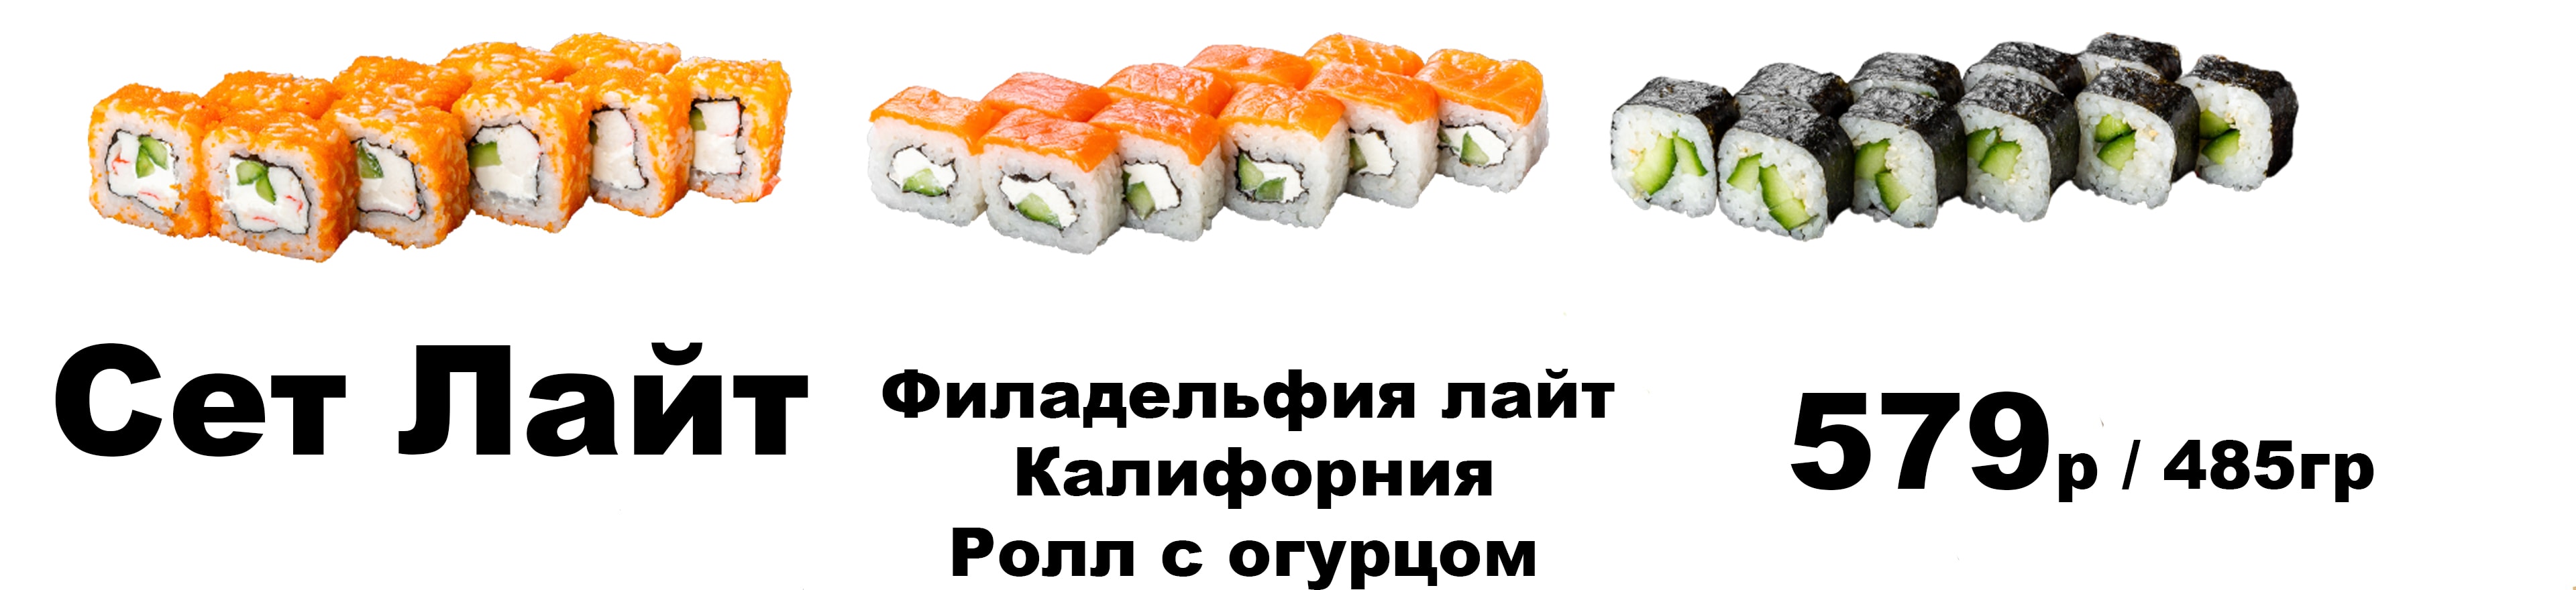 Заказать суши с доставкой на дом чебоксары фото 41